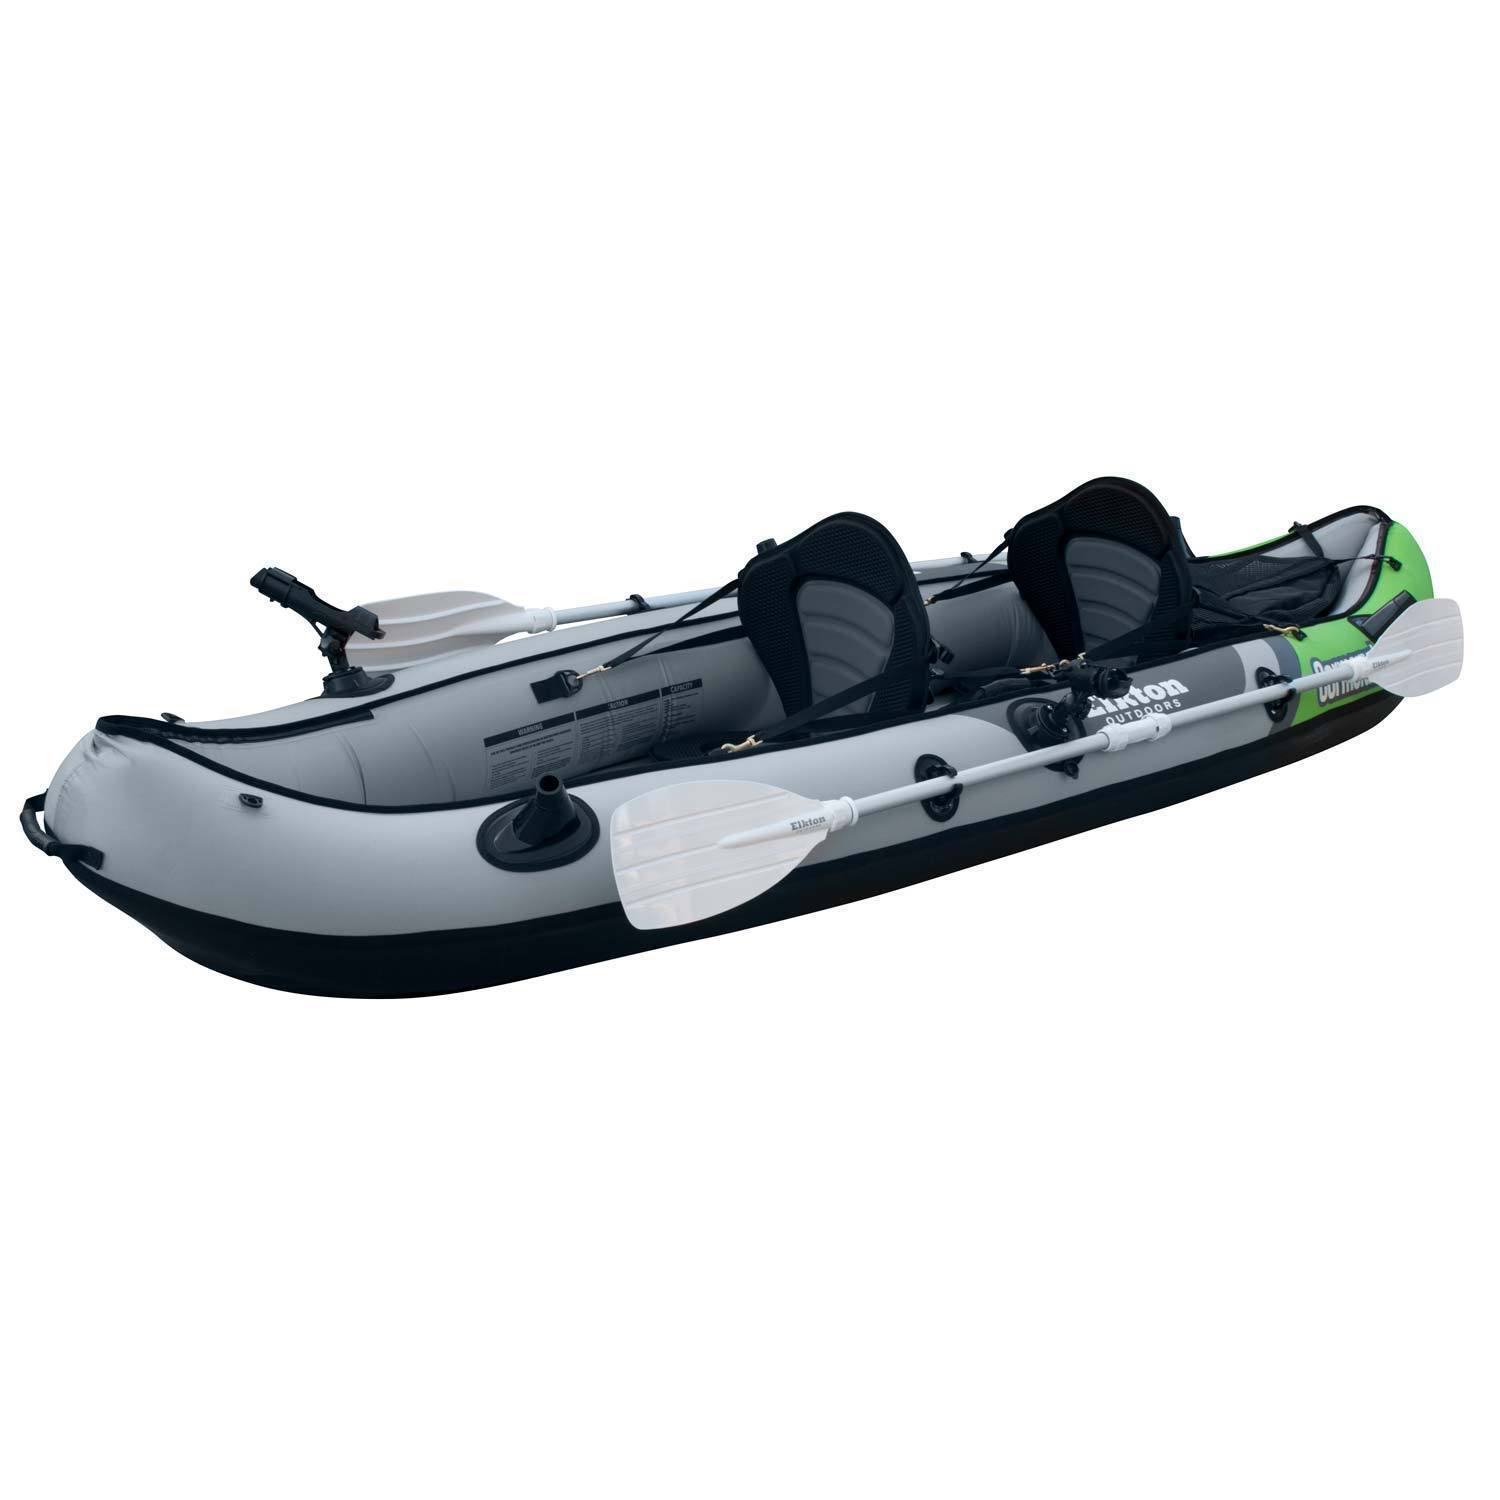 Elkton Outdoors Comorant 2 Person Kayak, 10 Foot Inflatable Fishing Kayak, Full Kit! - image 3 of 11